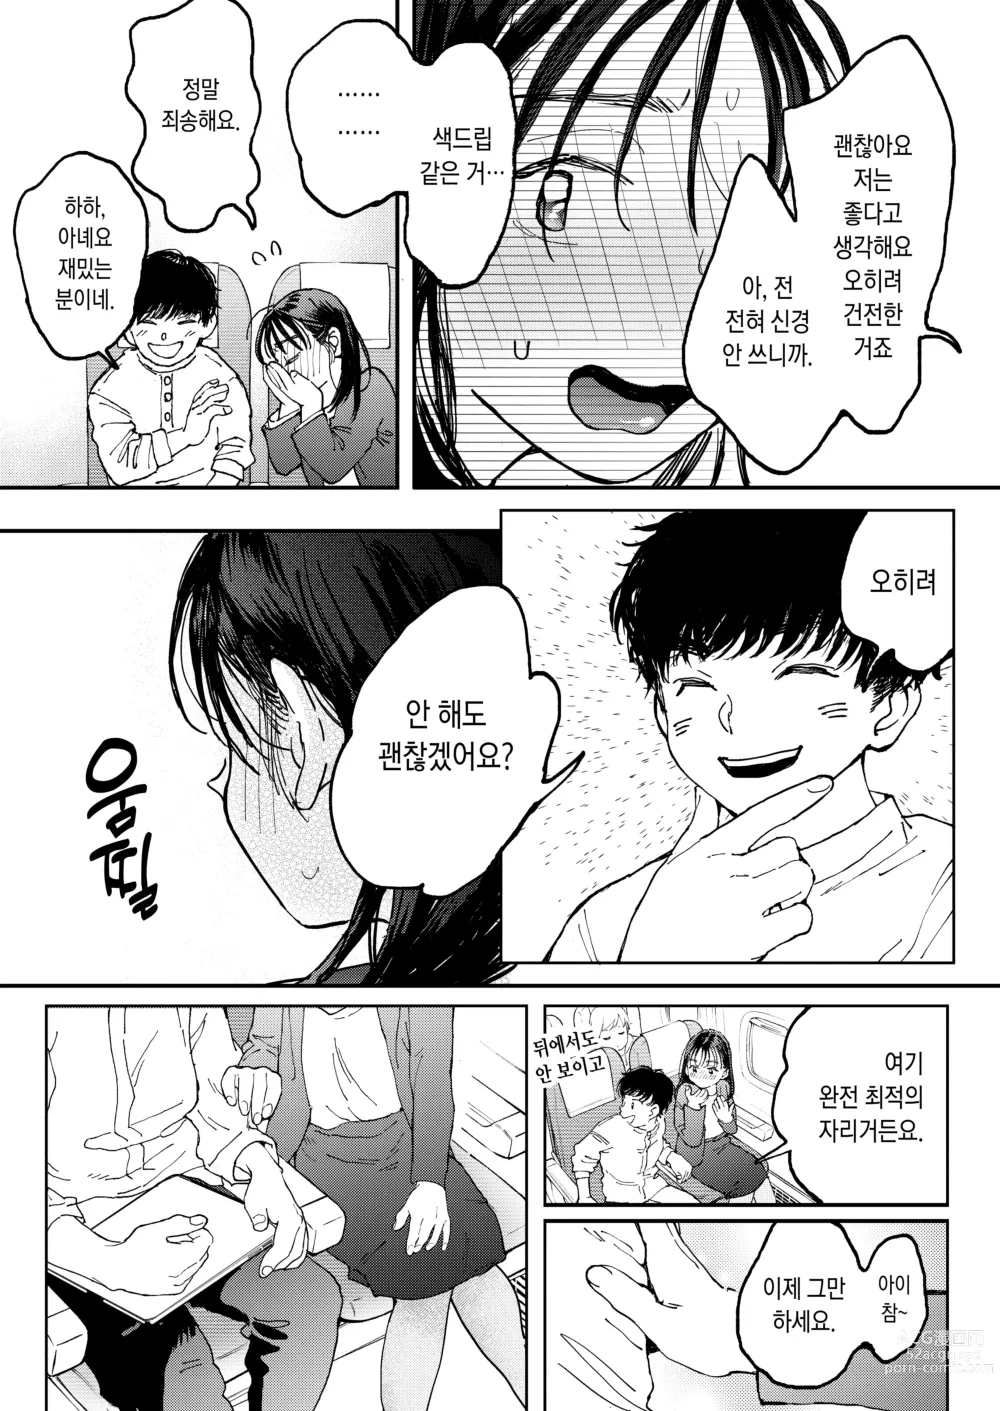 Page 14 of doujinshi 발정난 OL은 비행기 안에서도 성욕을 채우고 싶다